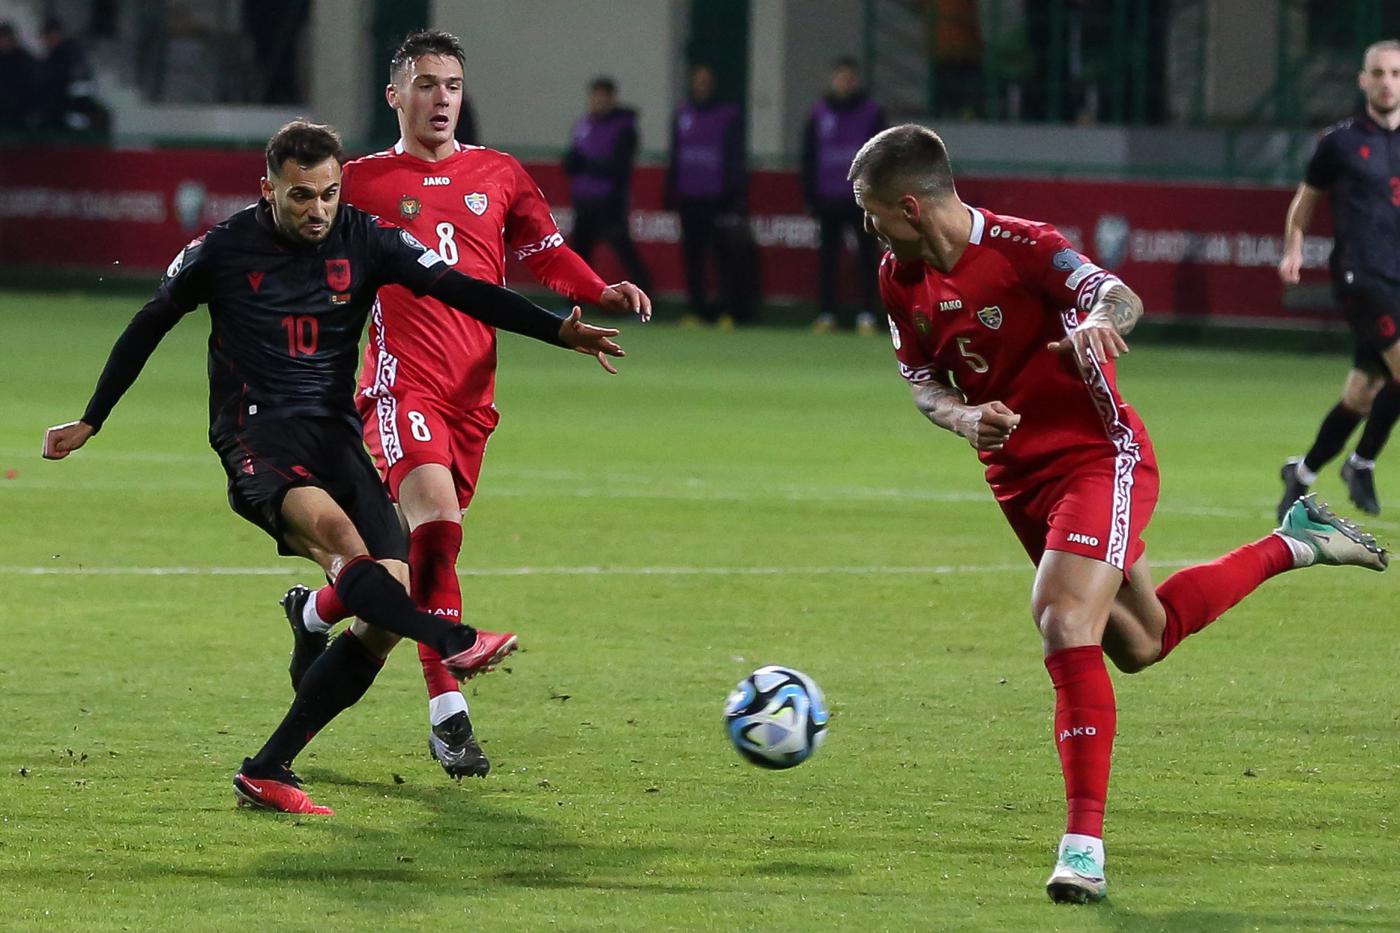 Nhận định Albania vs Tây Ban Nha